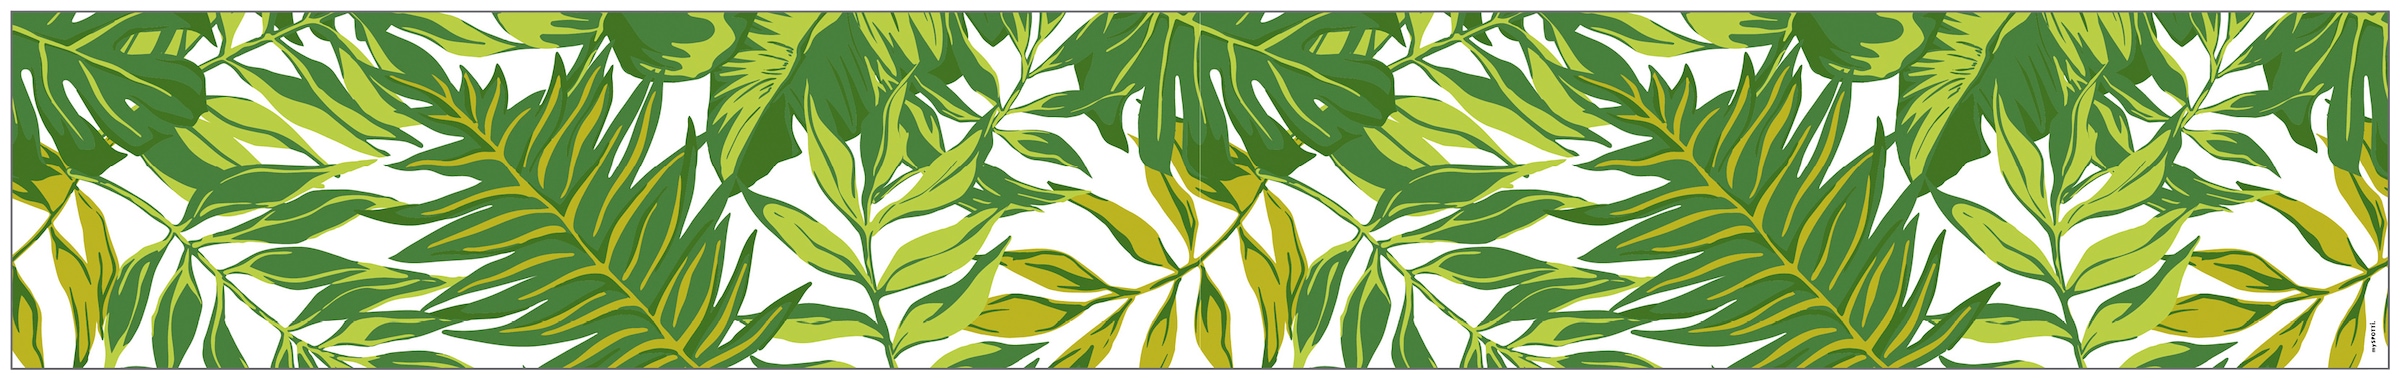 MySpotti Fensterfolie »Look Palm Leaves jetzt cm, 200 haftend, halbtransparent, x glattstatisch statisch haftend kaufen green«, 30